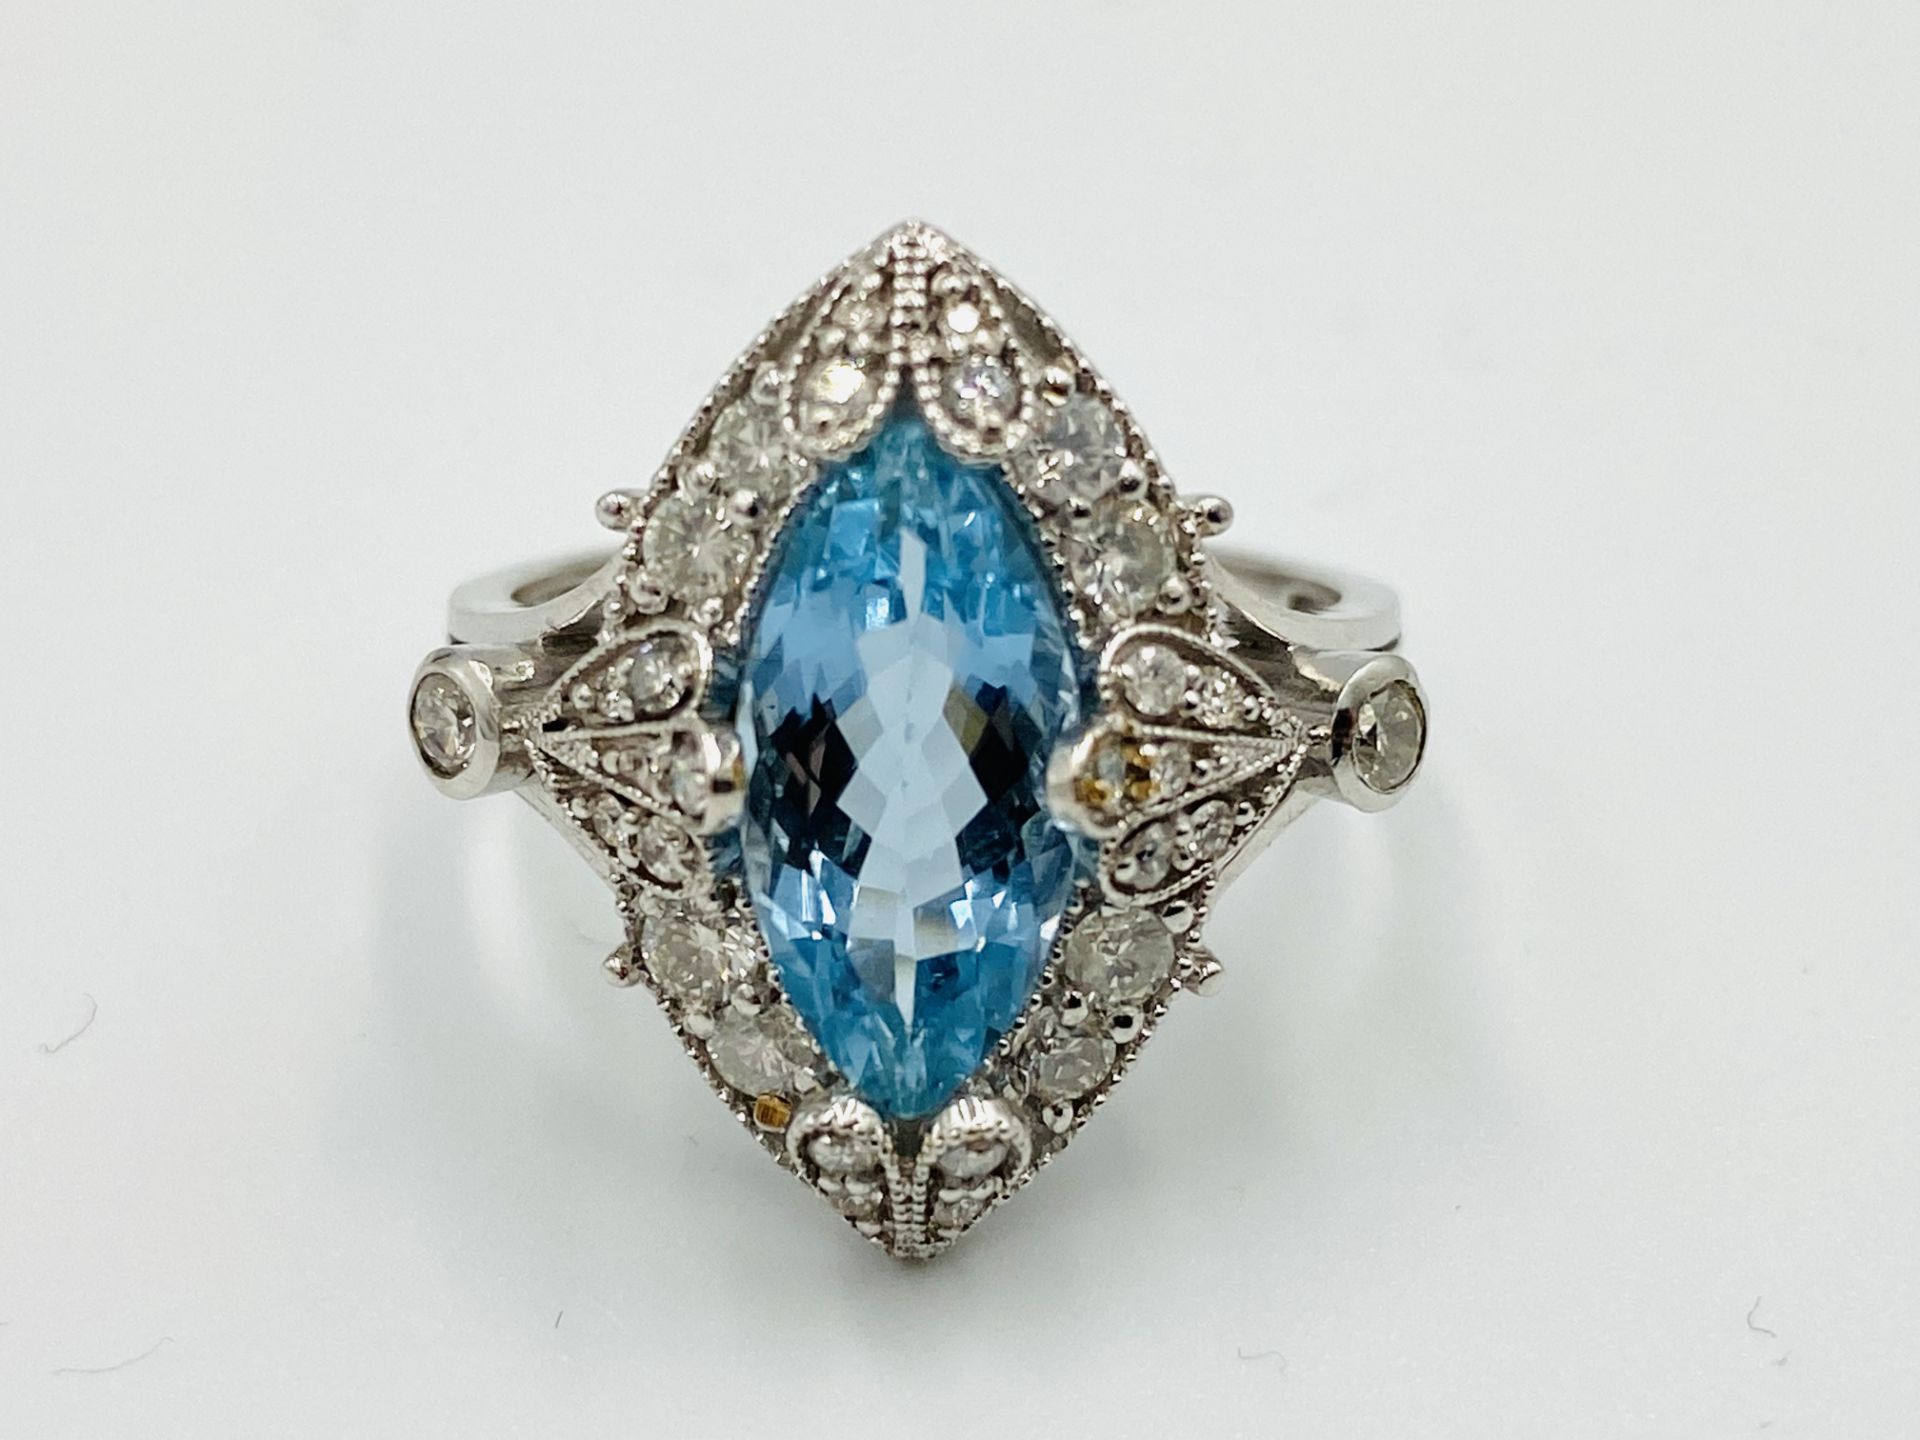 I8ct white gold, aquamarine and diamond ring